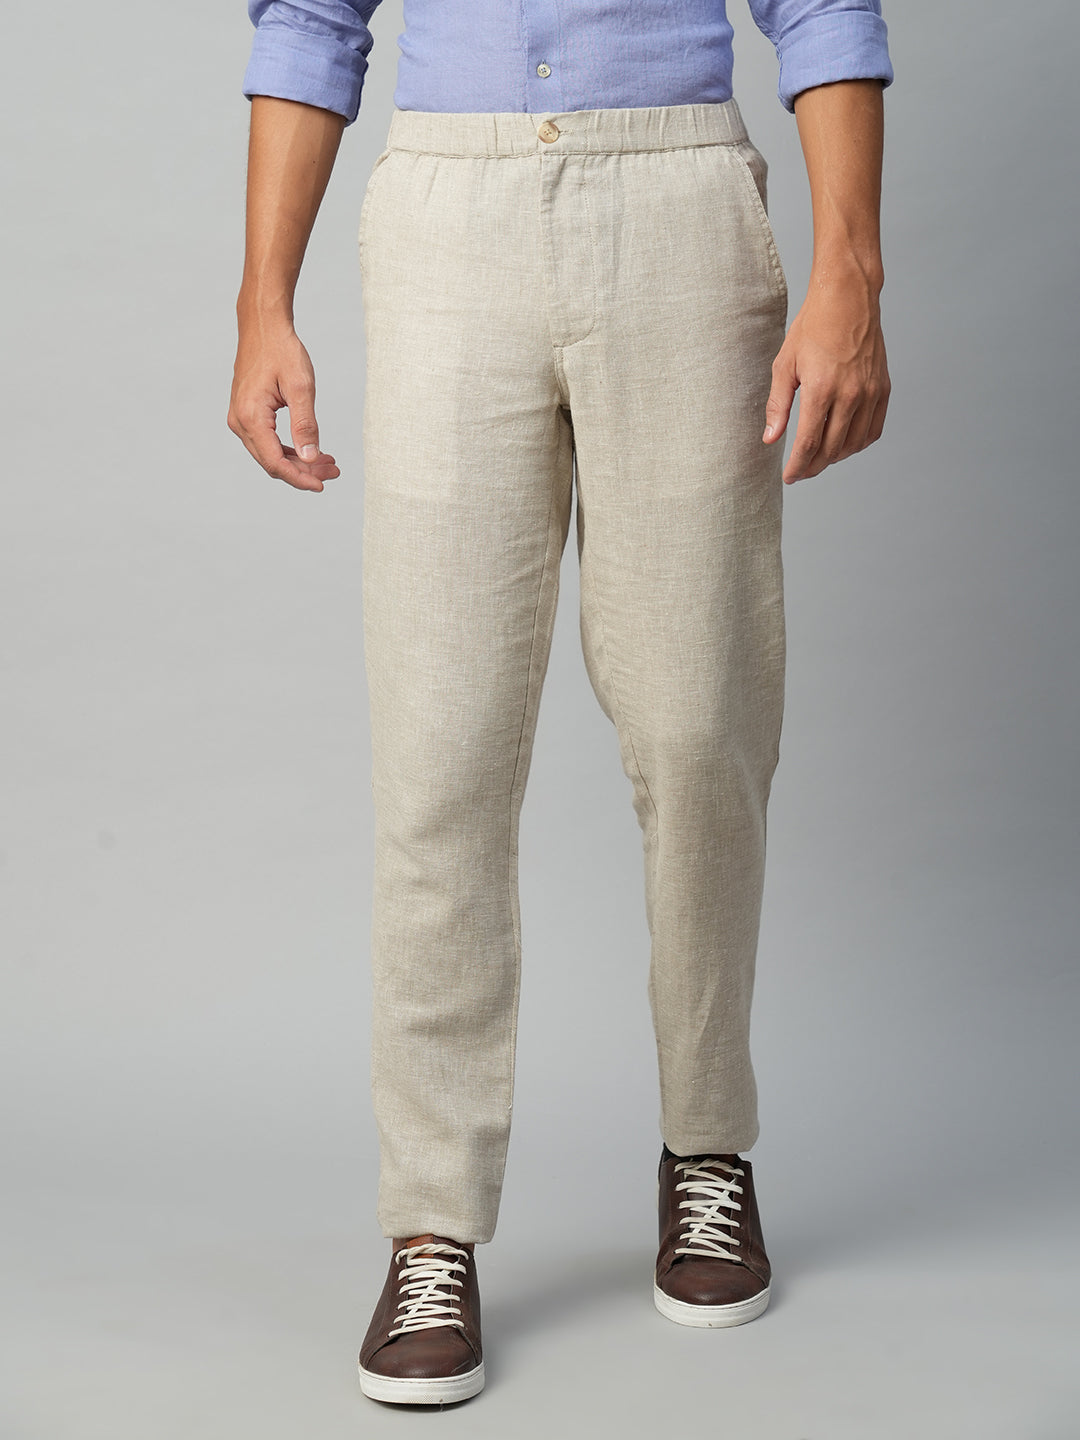 Men's Natural Cotton Linen Regular Fit Pant